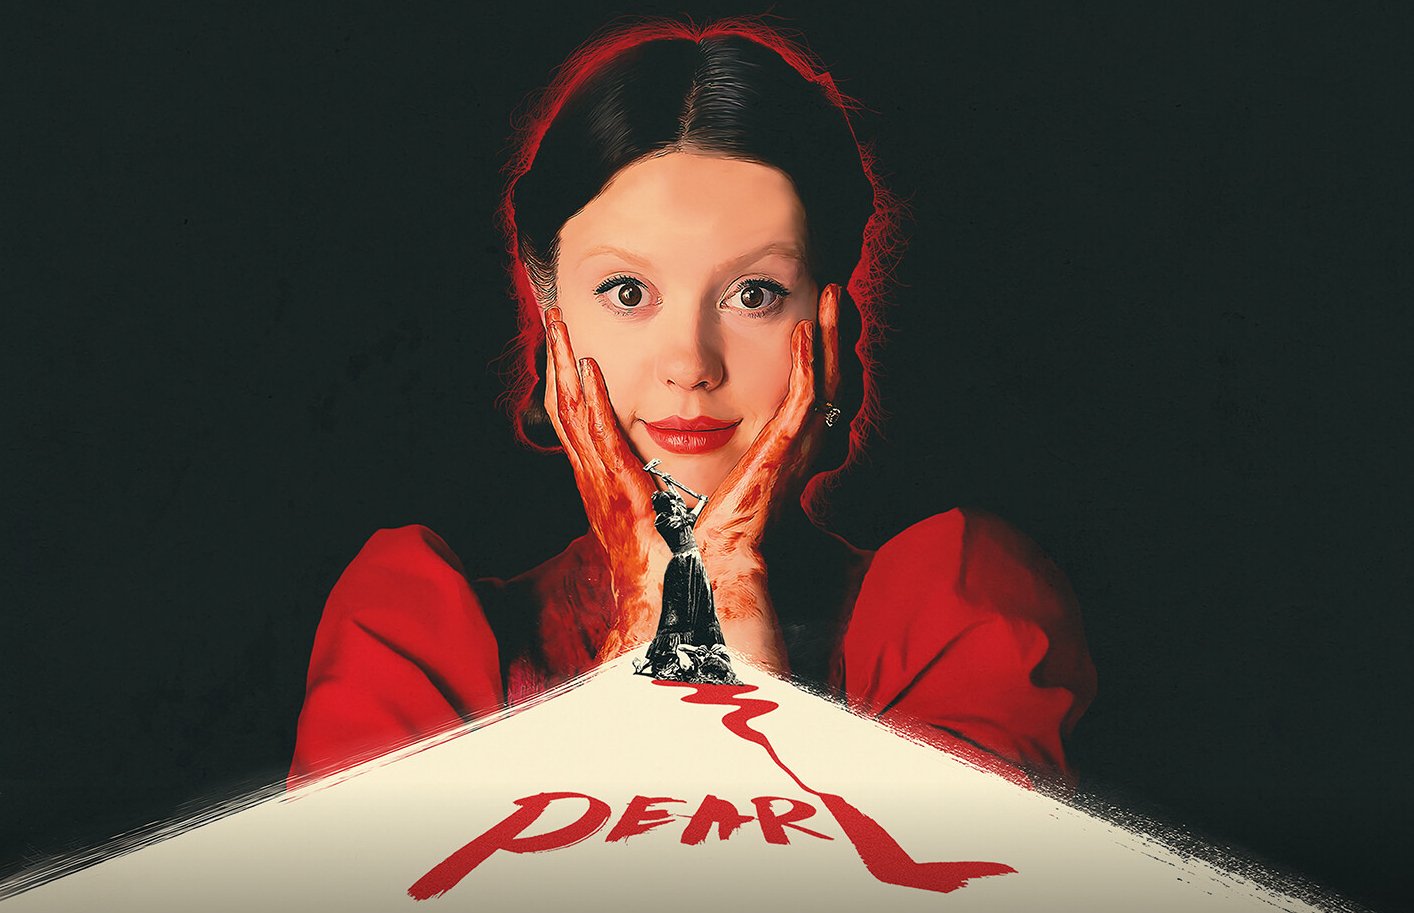 Póster de Pearl, película de terror disponible en Movistar Plus+ desde el sábado 17 de junio